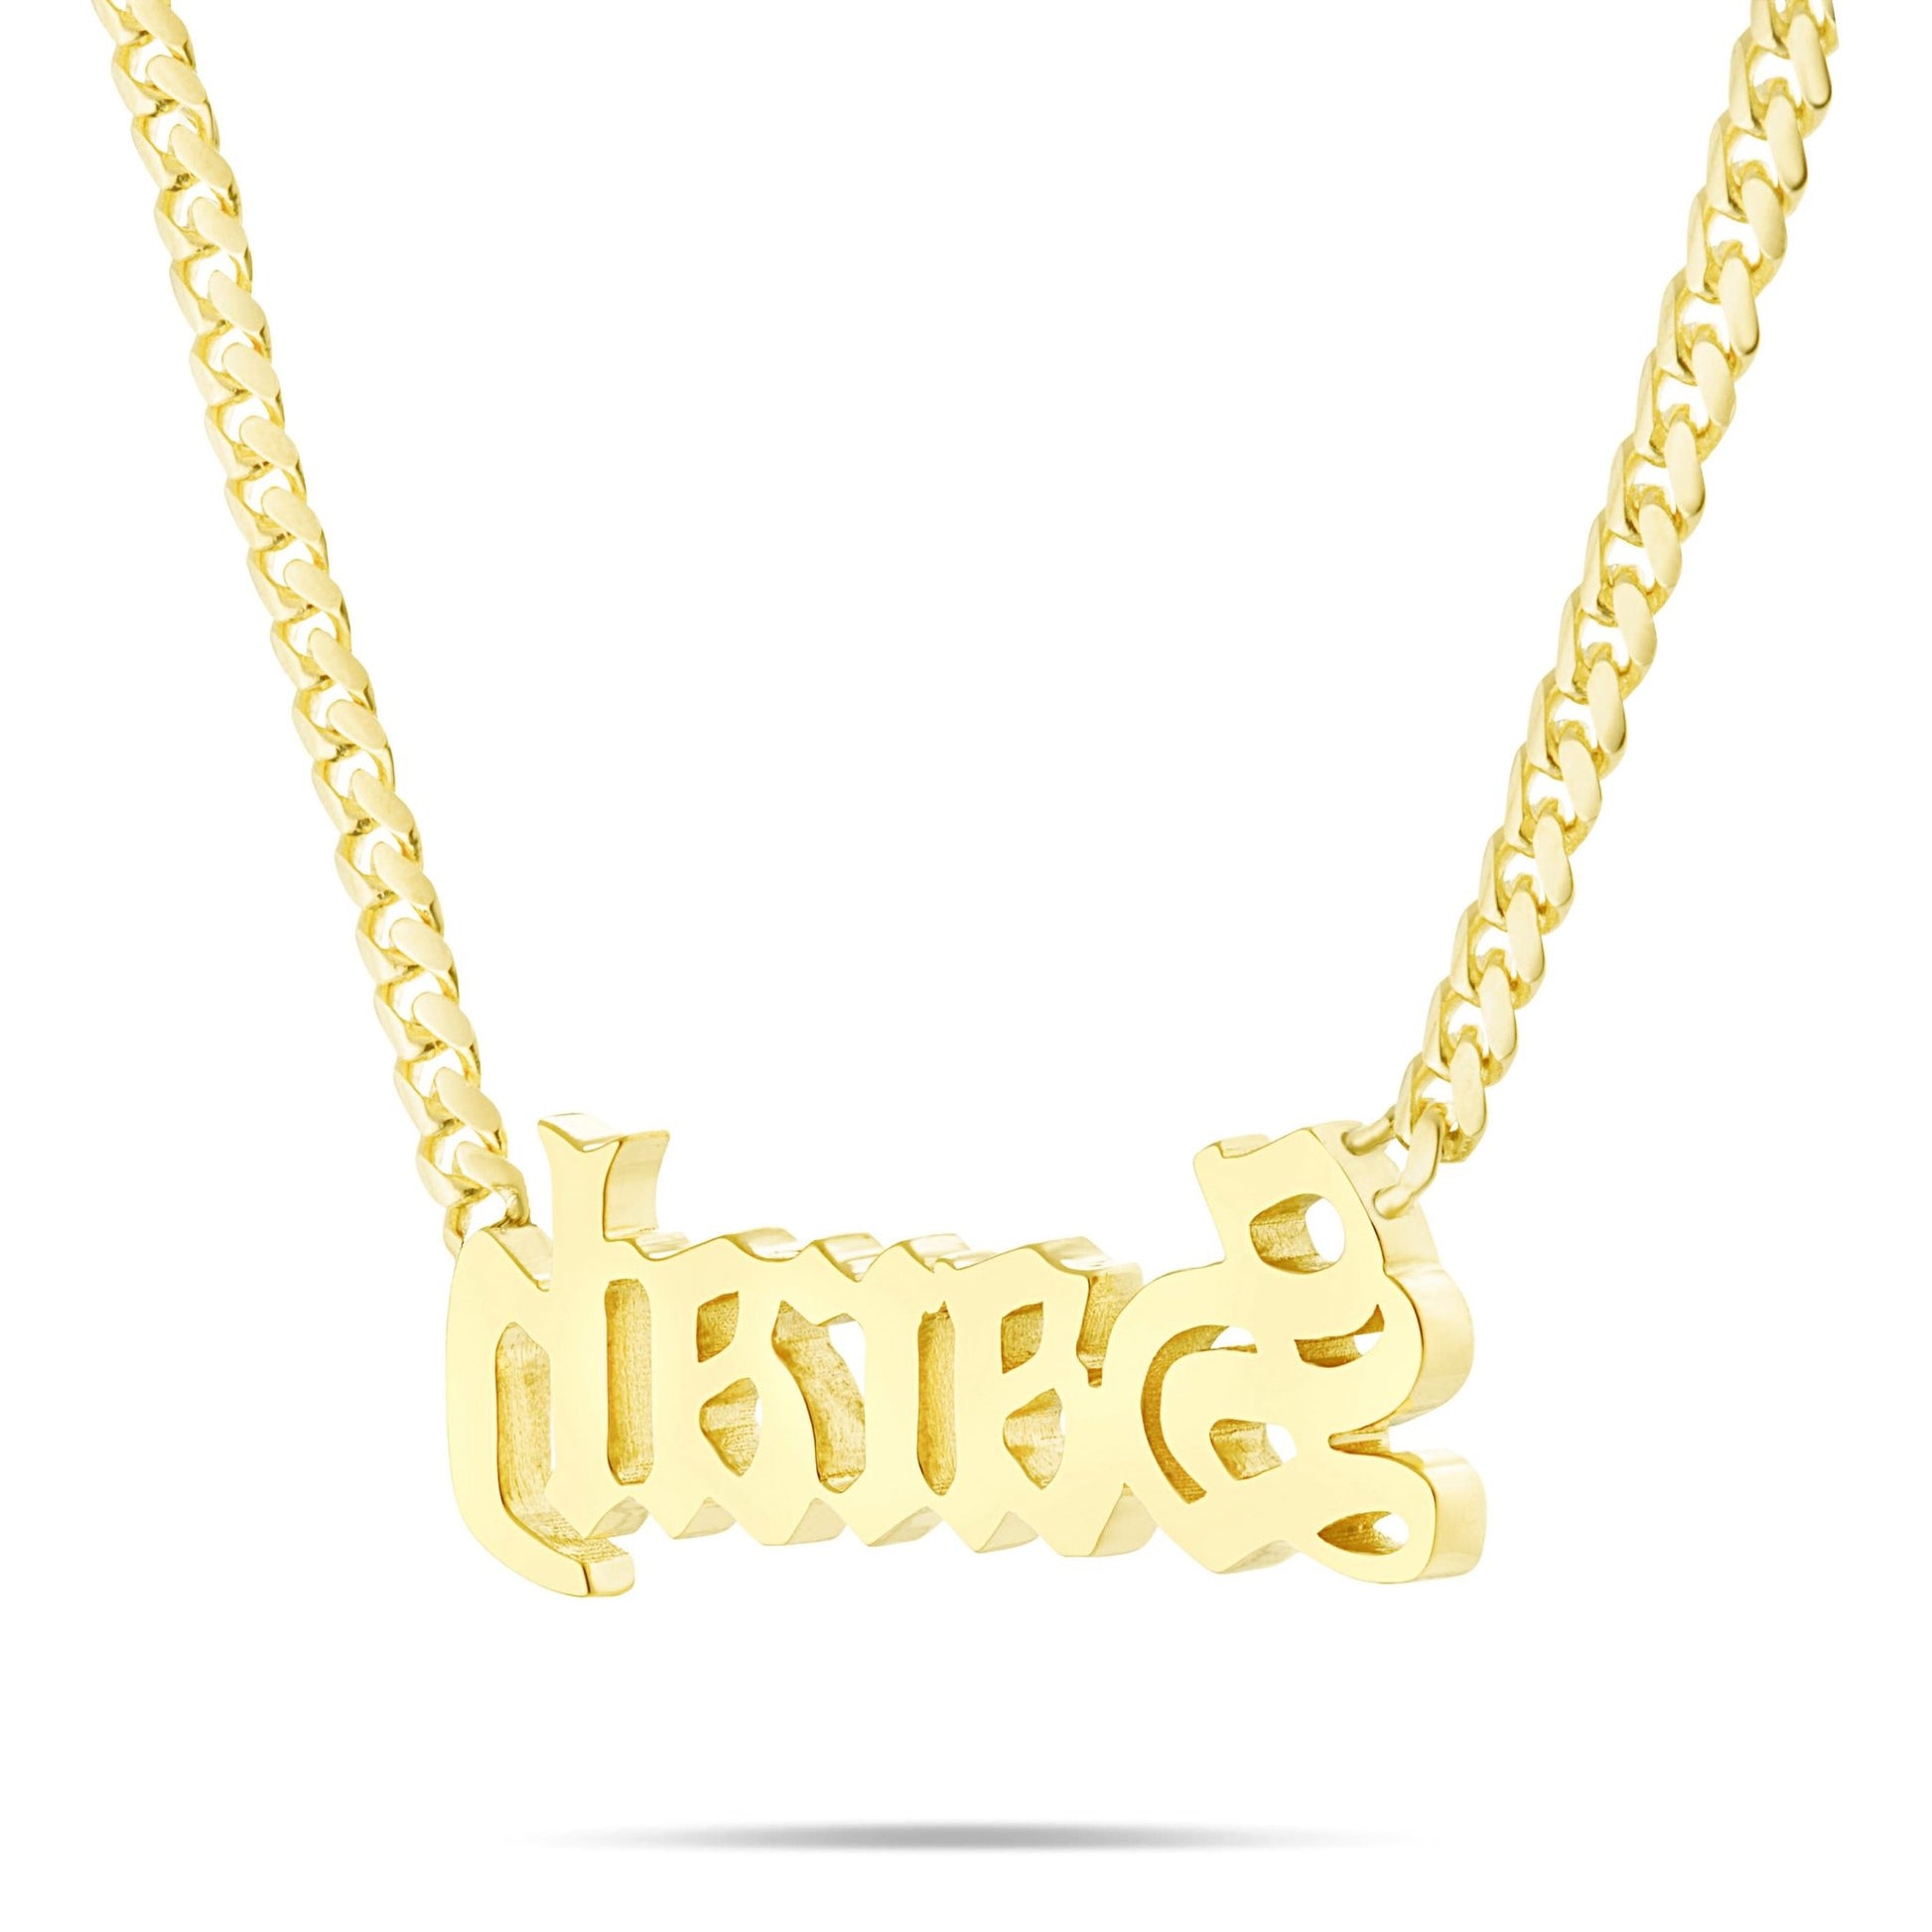 Customizable Solid Gold Medium Cuban Name Necklace